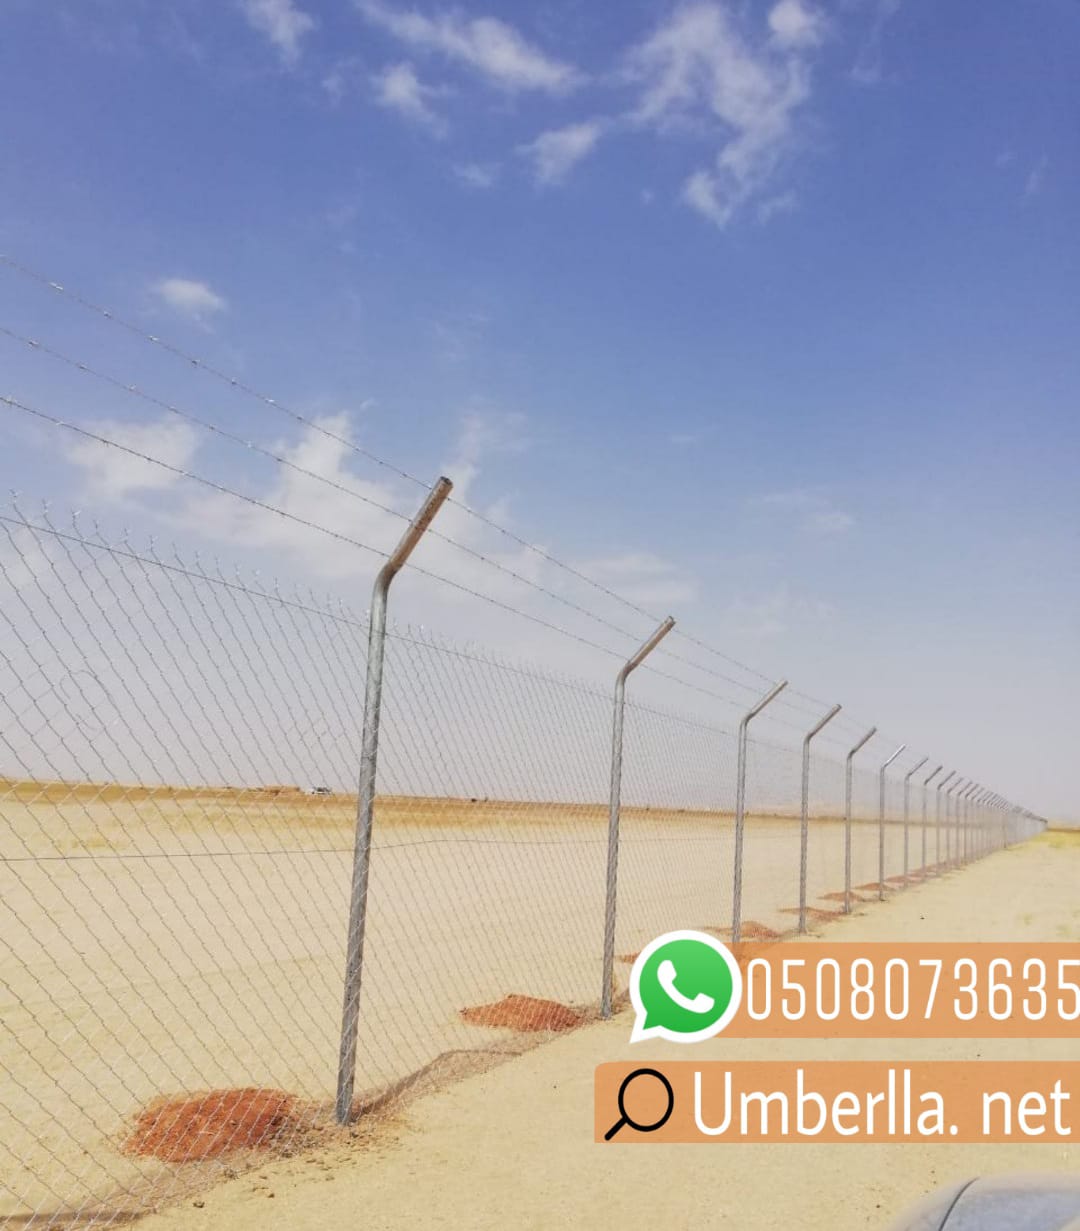 شبوك مزارع و تسوير اراضي في جدة , 0508073635 P_2081sleg65